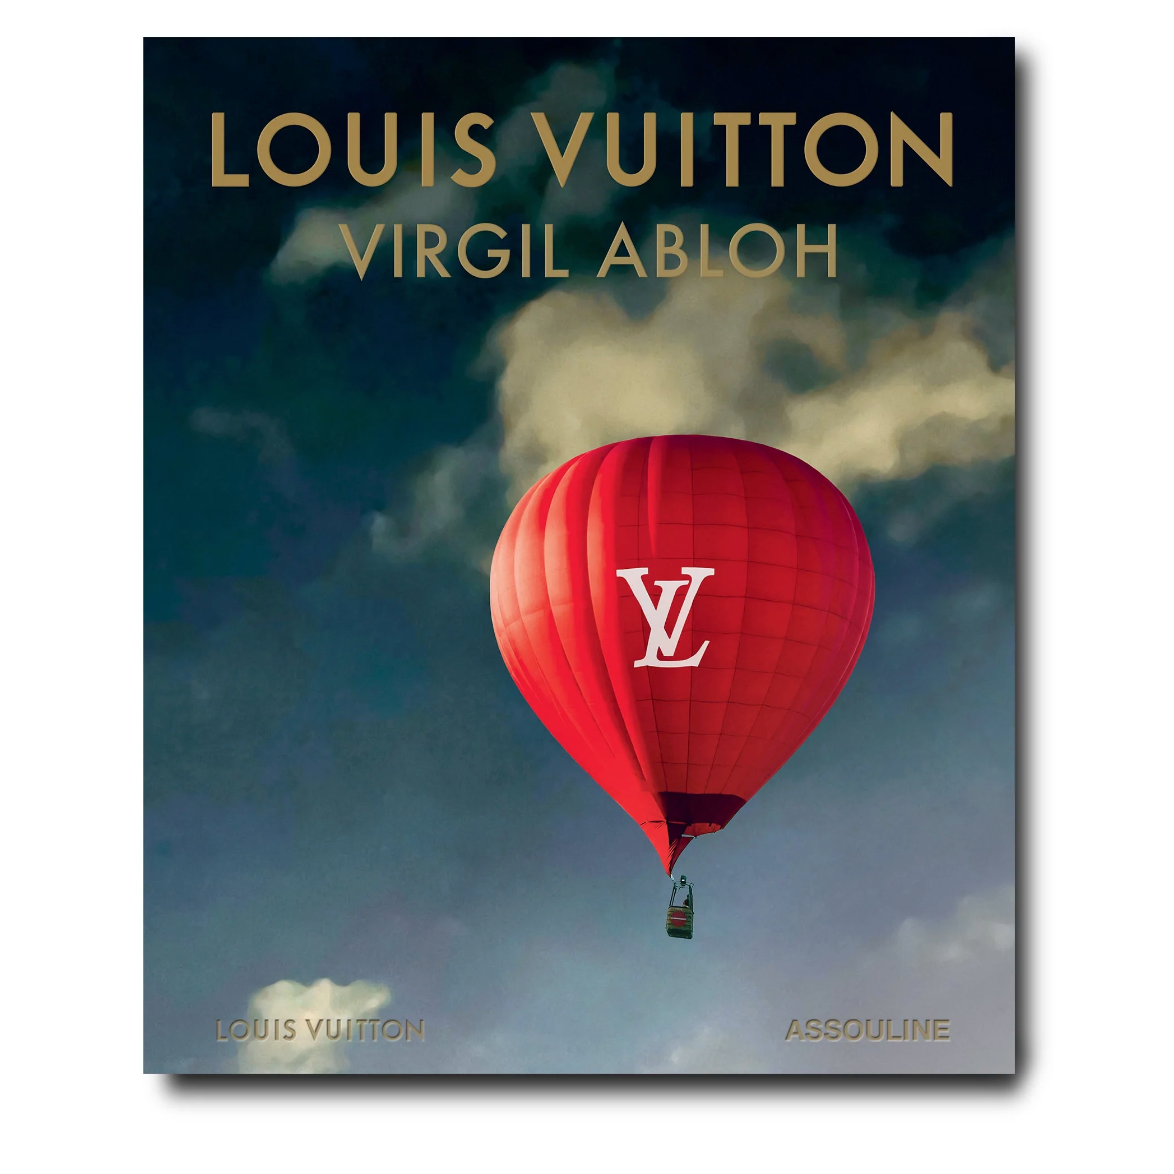 Louis Vuitton: Virgil Abloh – Ultimate Edition by Assouline